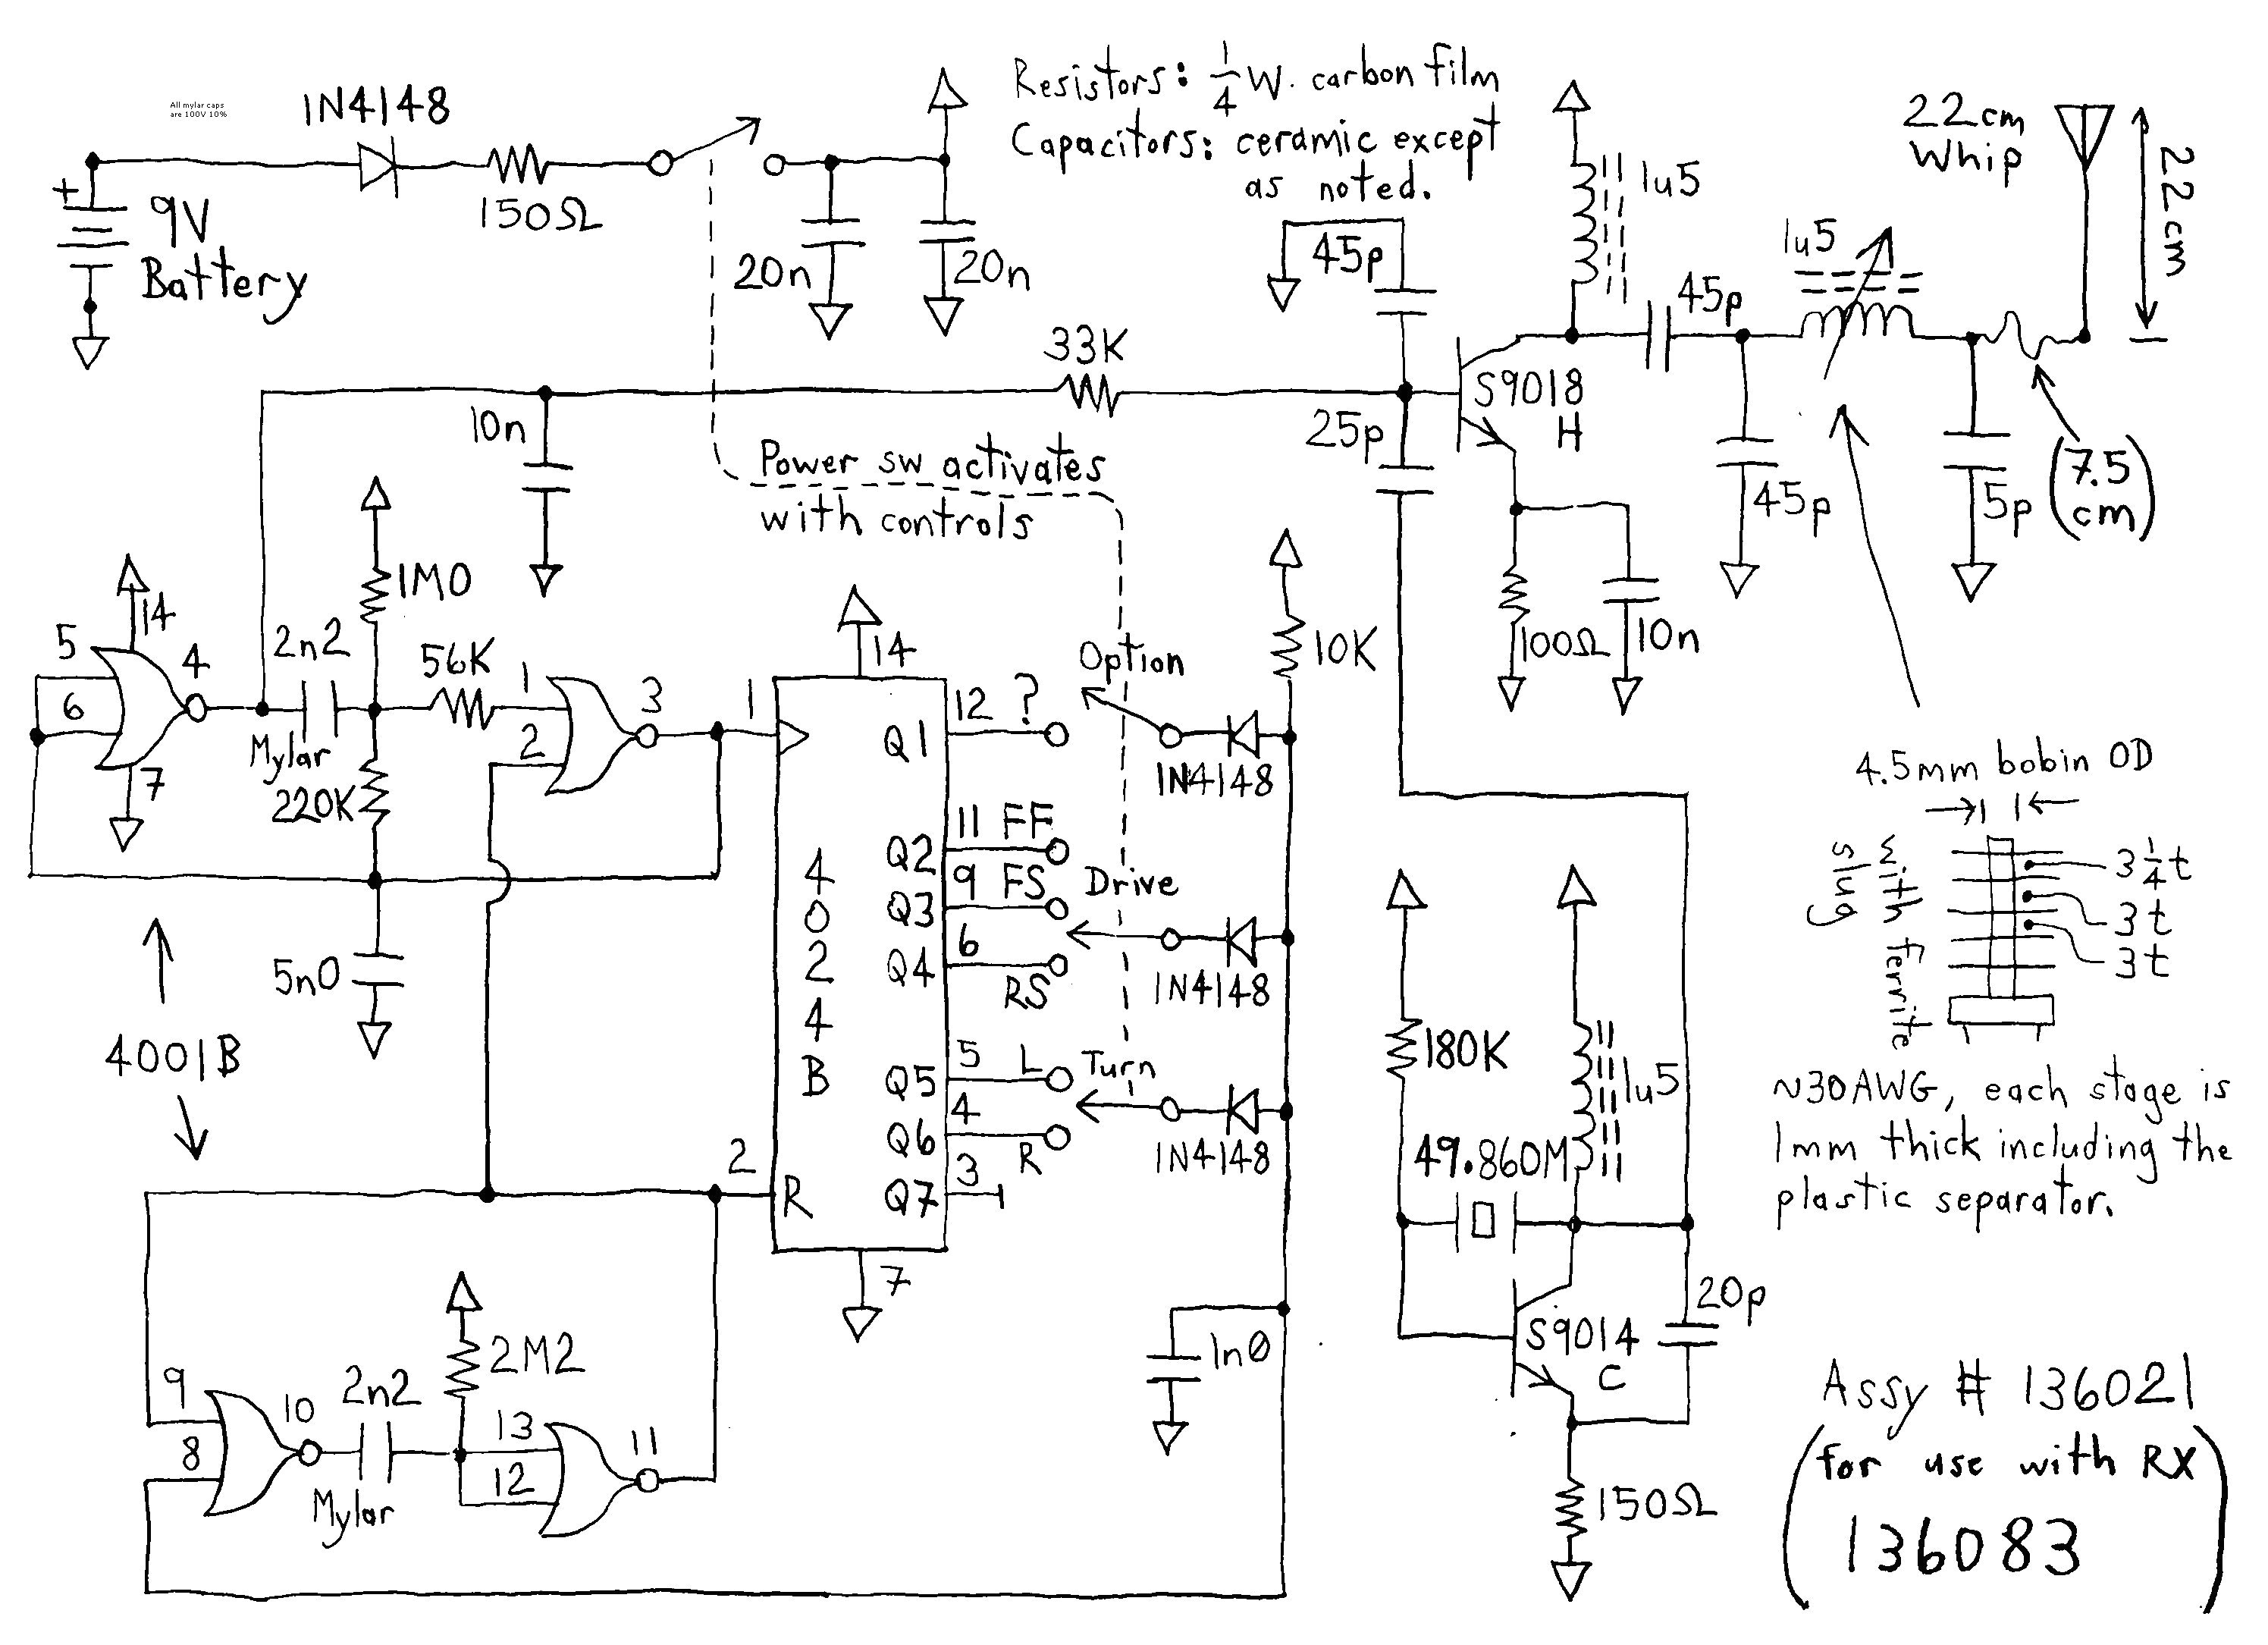 1999 suburban wiring diagram pcm wiring diagrams place 1999 suburban wiring diagram pcm